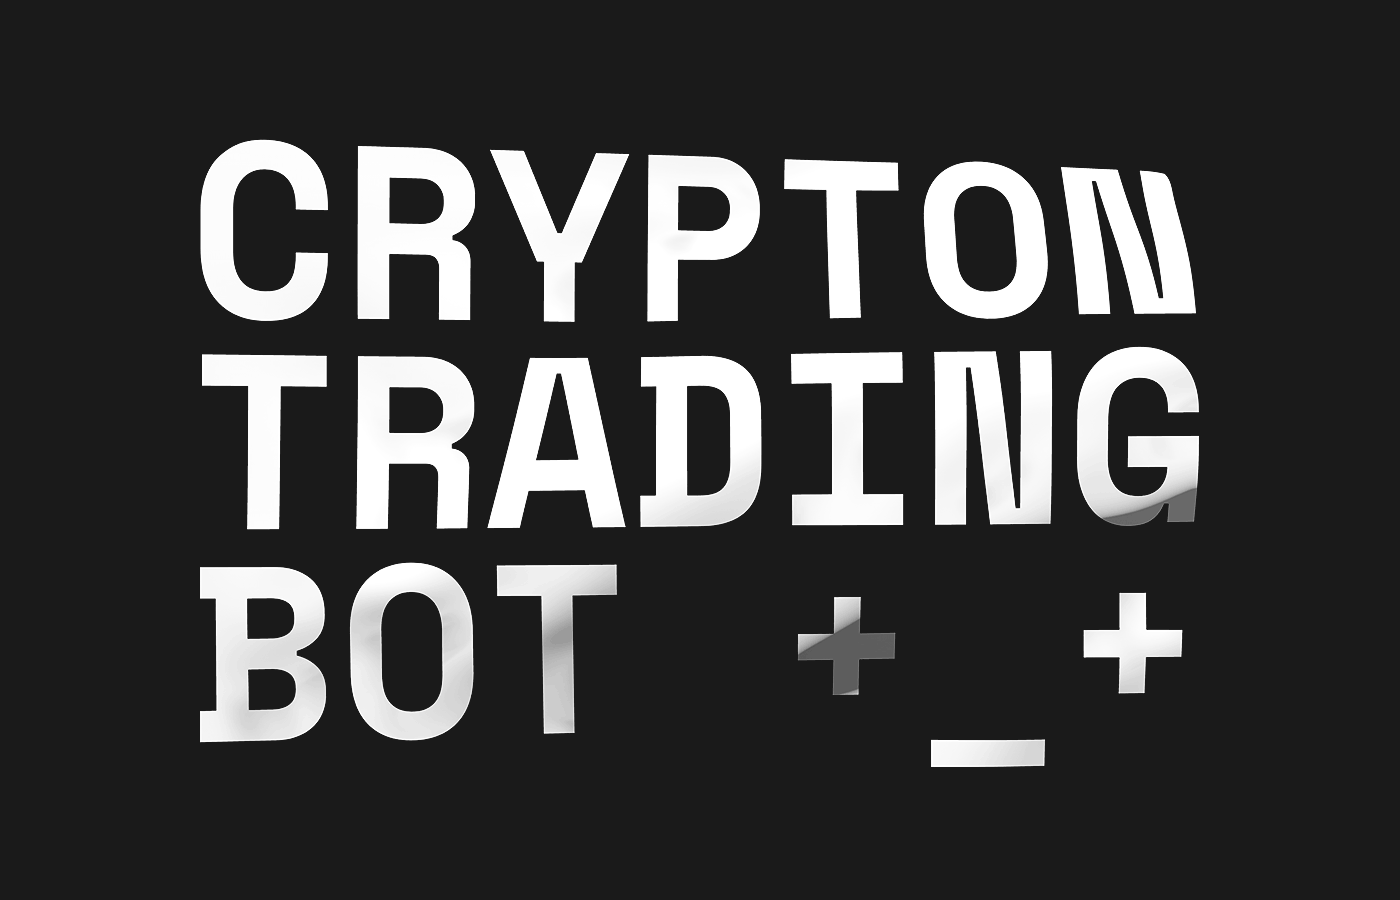 crypton bot